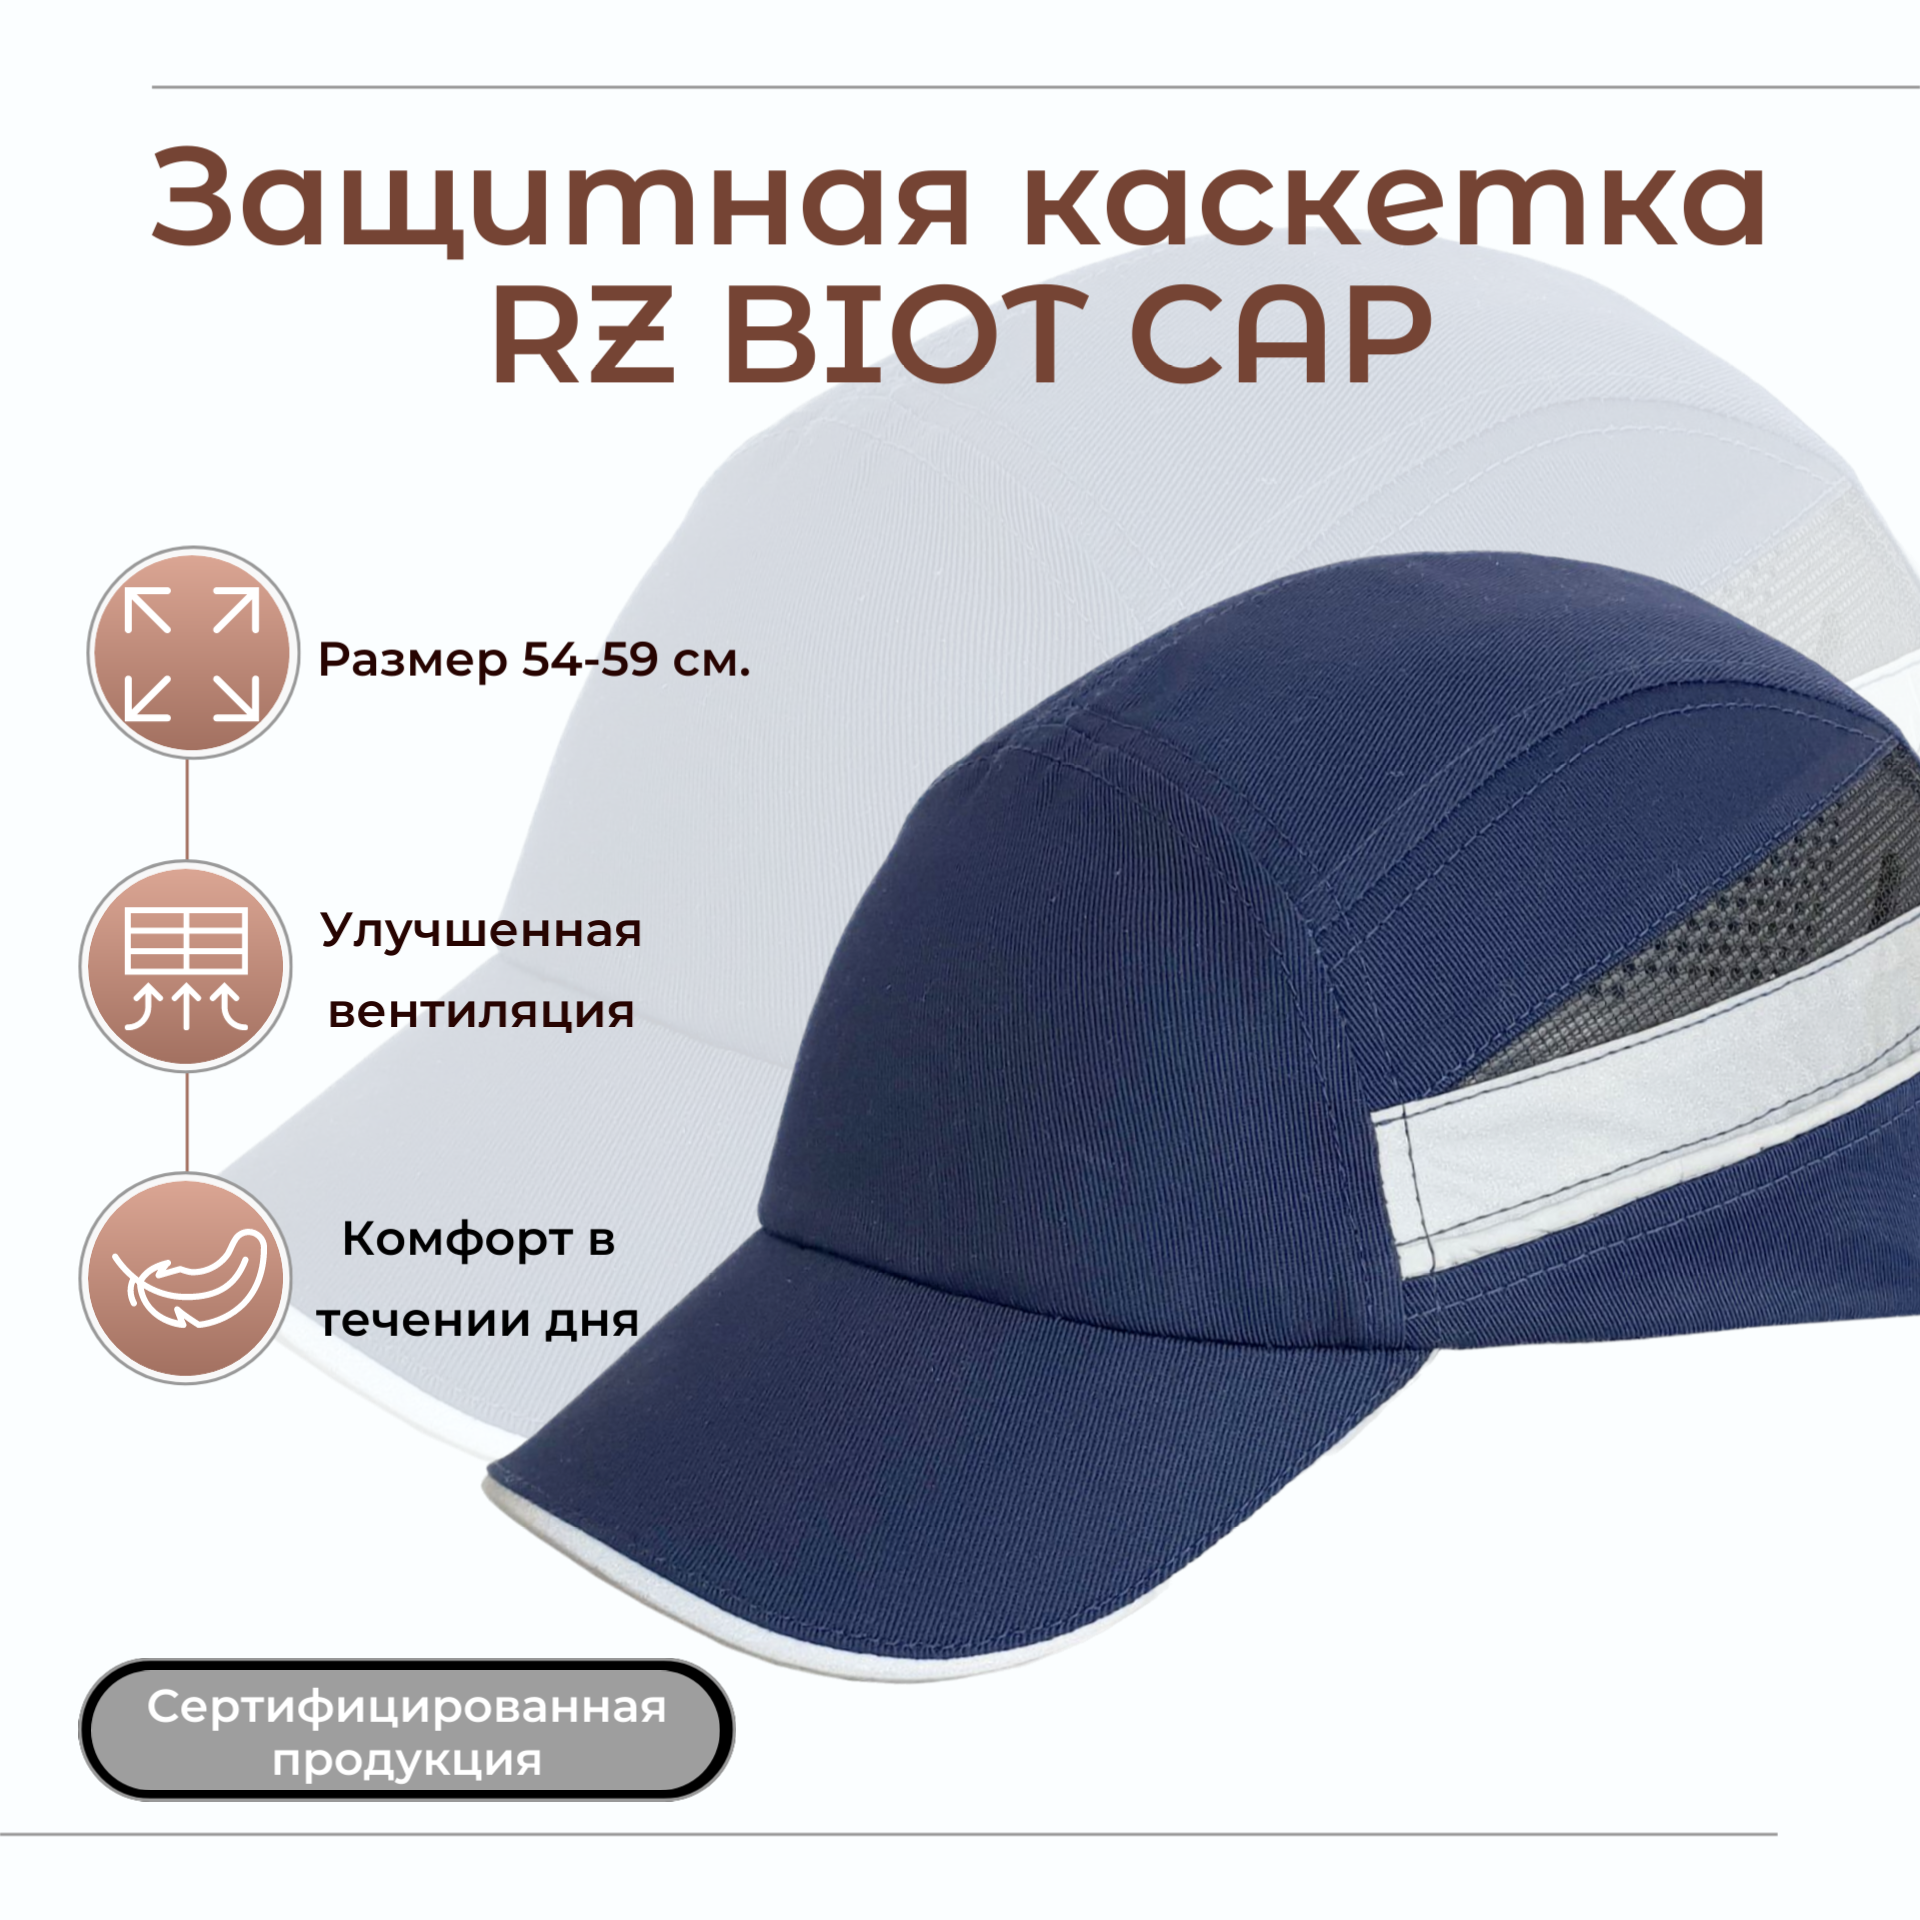 Каскетка защитная росомz RZ BIOT CAP синяя, повышенная вентиляция